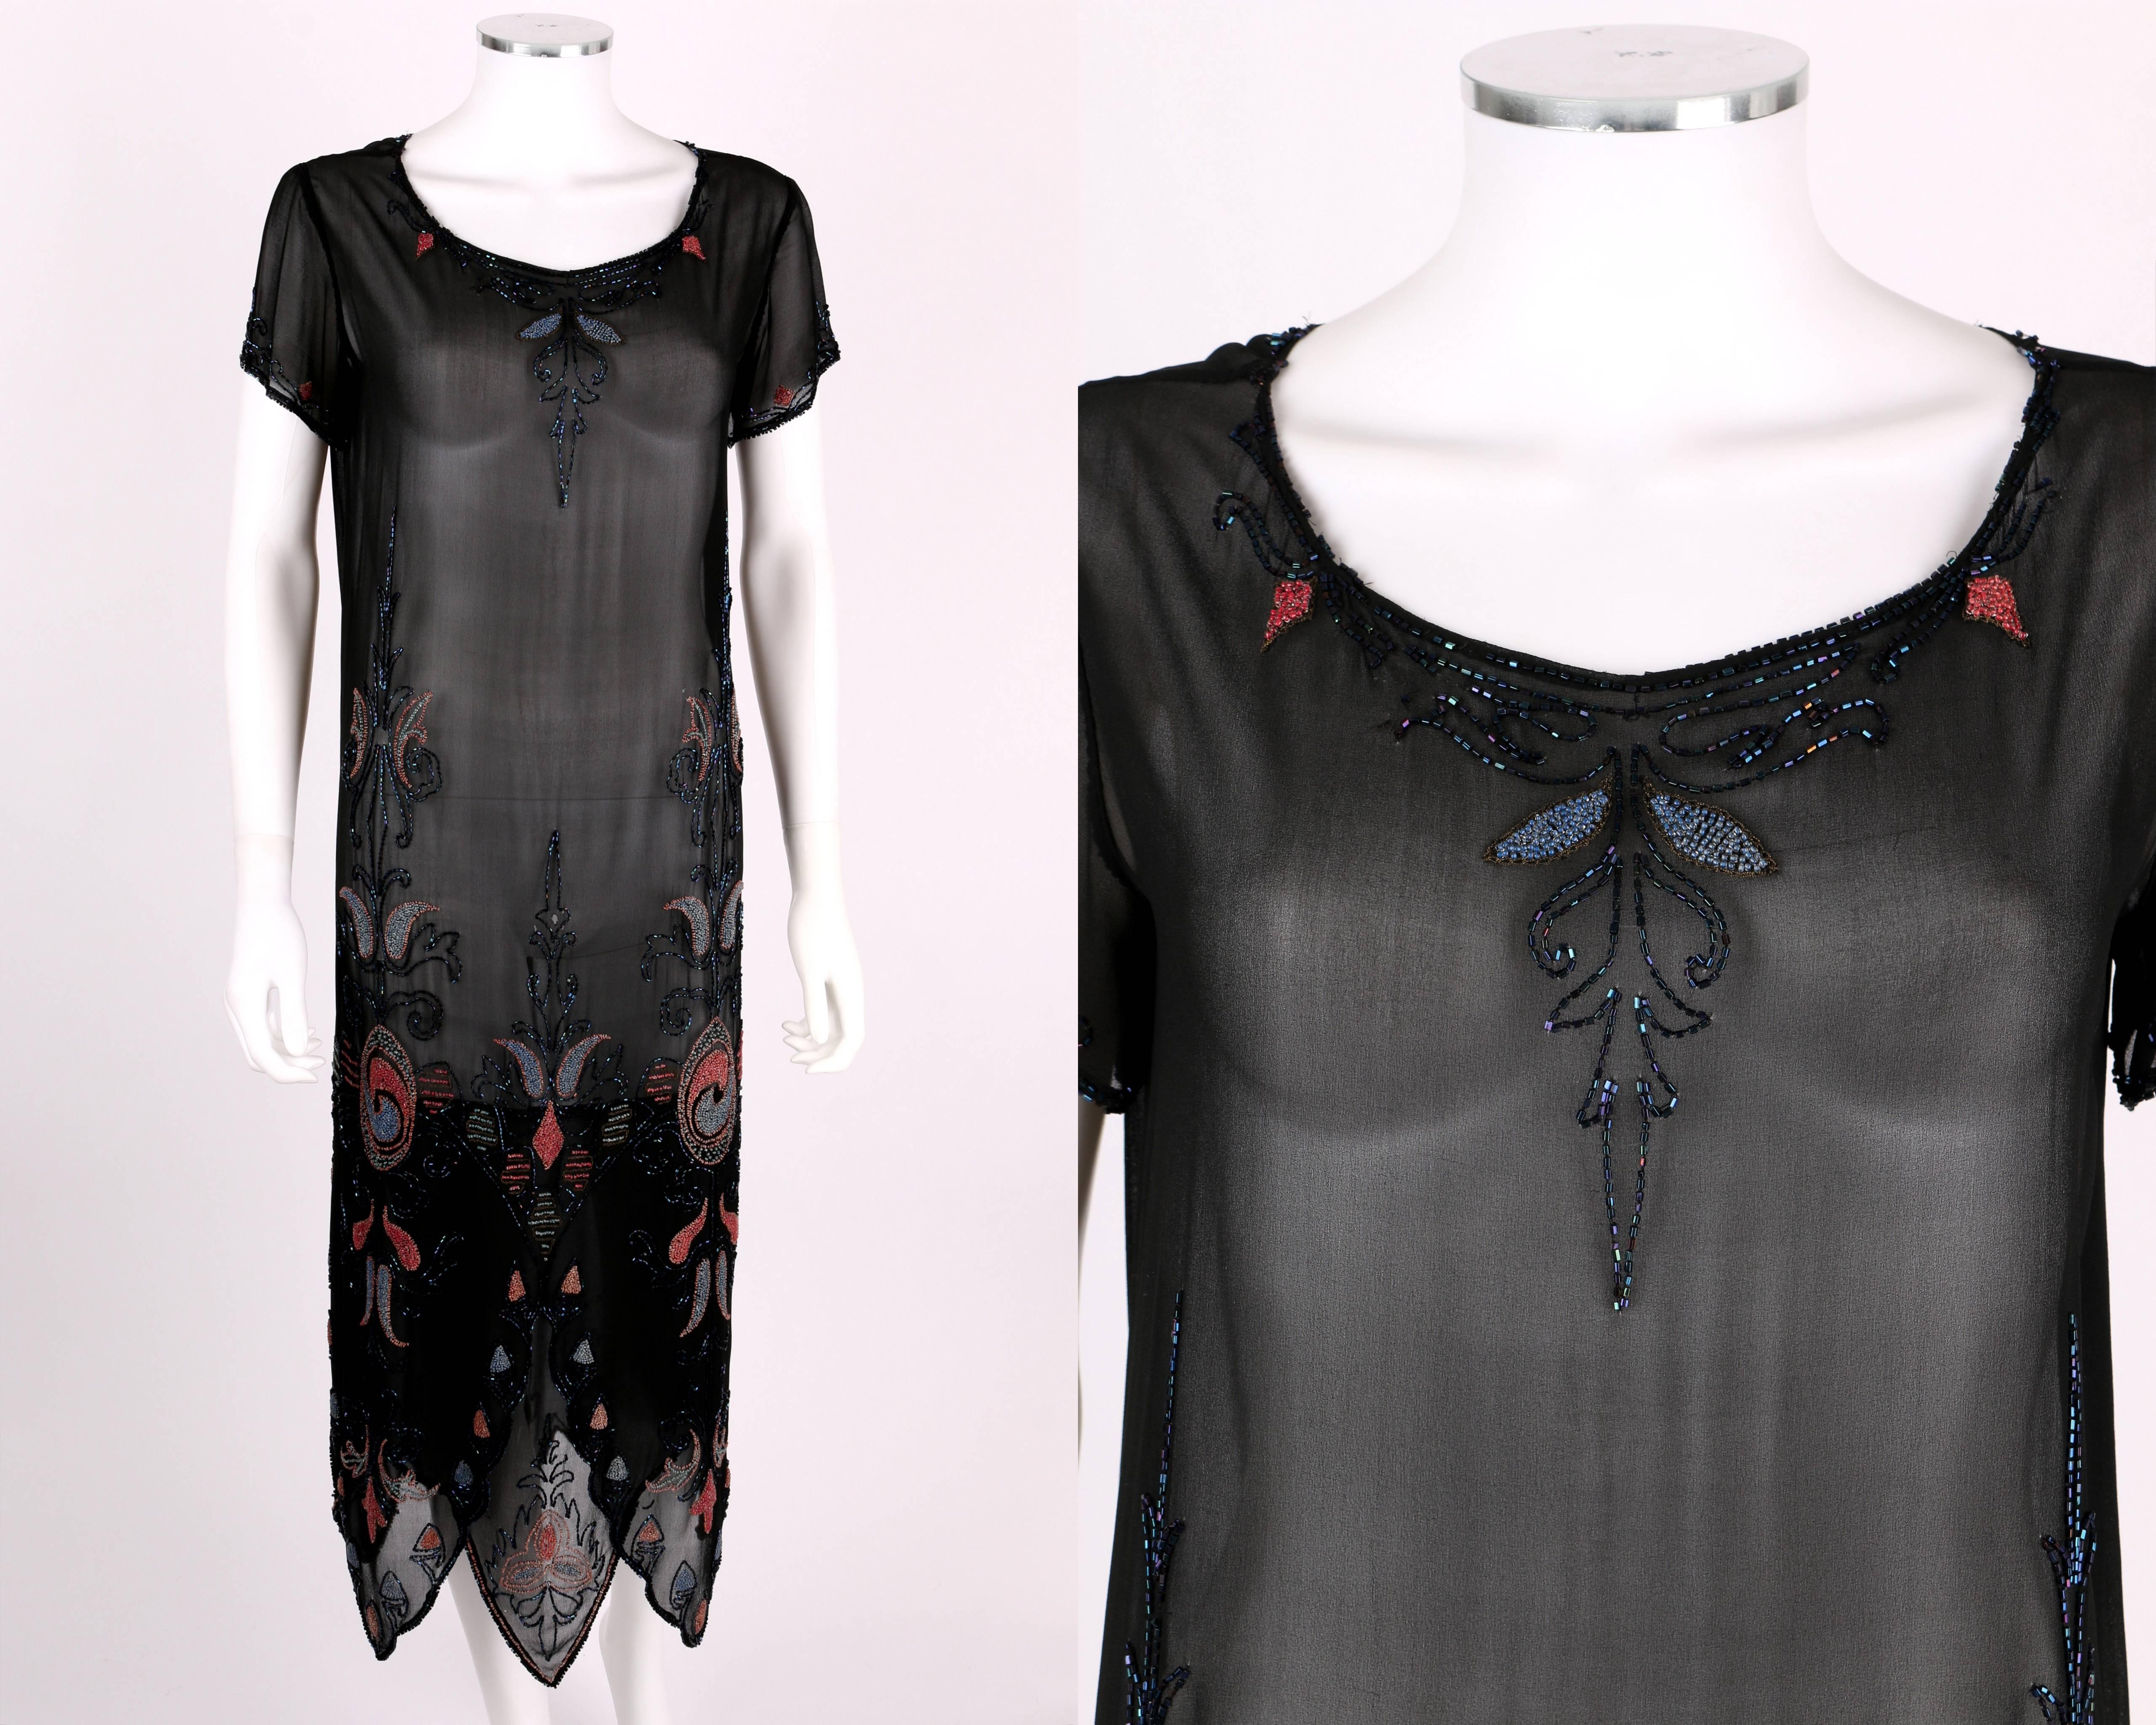 Vintage Couture c.1920's schwarz Seide Georgette Perlen Flapper Kleid. Mehrfarbige florale Glasperlenverzierung entlang der Vorderseite, des Saums, des Halsausschnitts und der Manschetten. Rundhalsausschnitt. Kurze Ärmel. Saum mit mehrlagiger